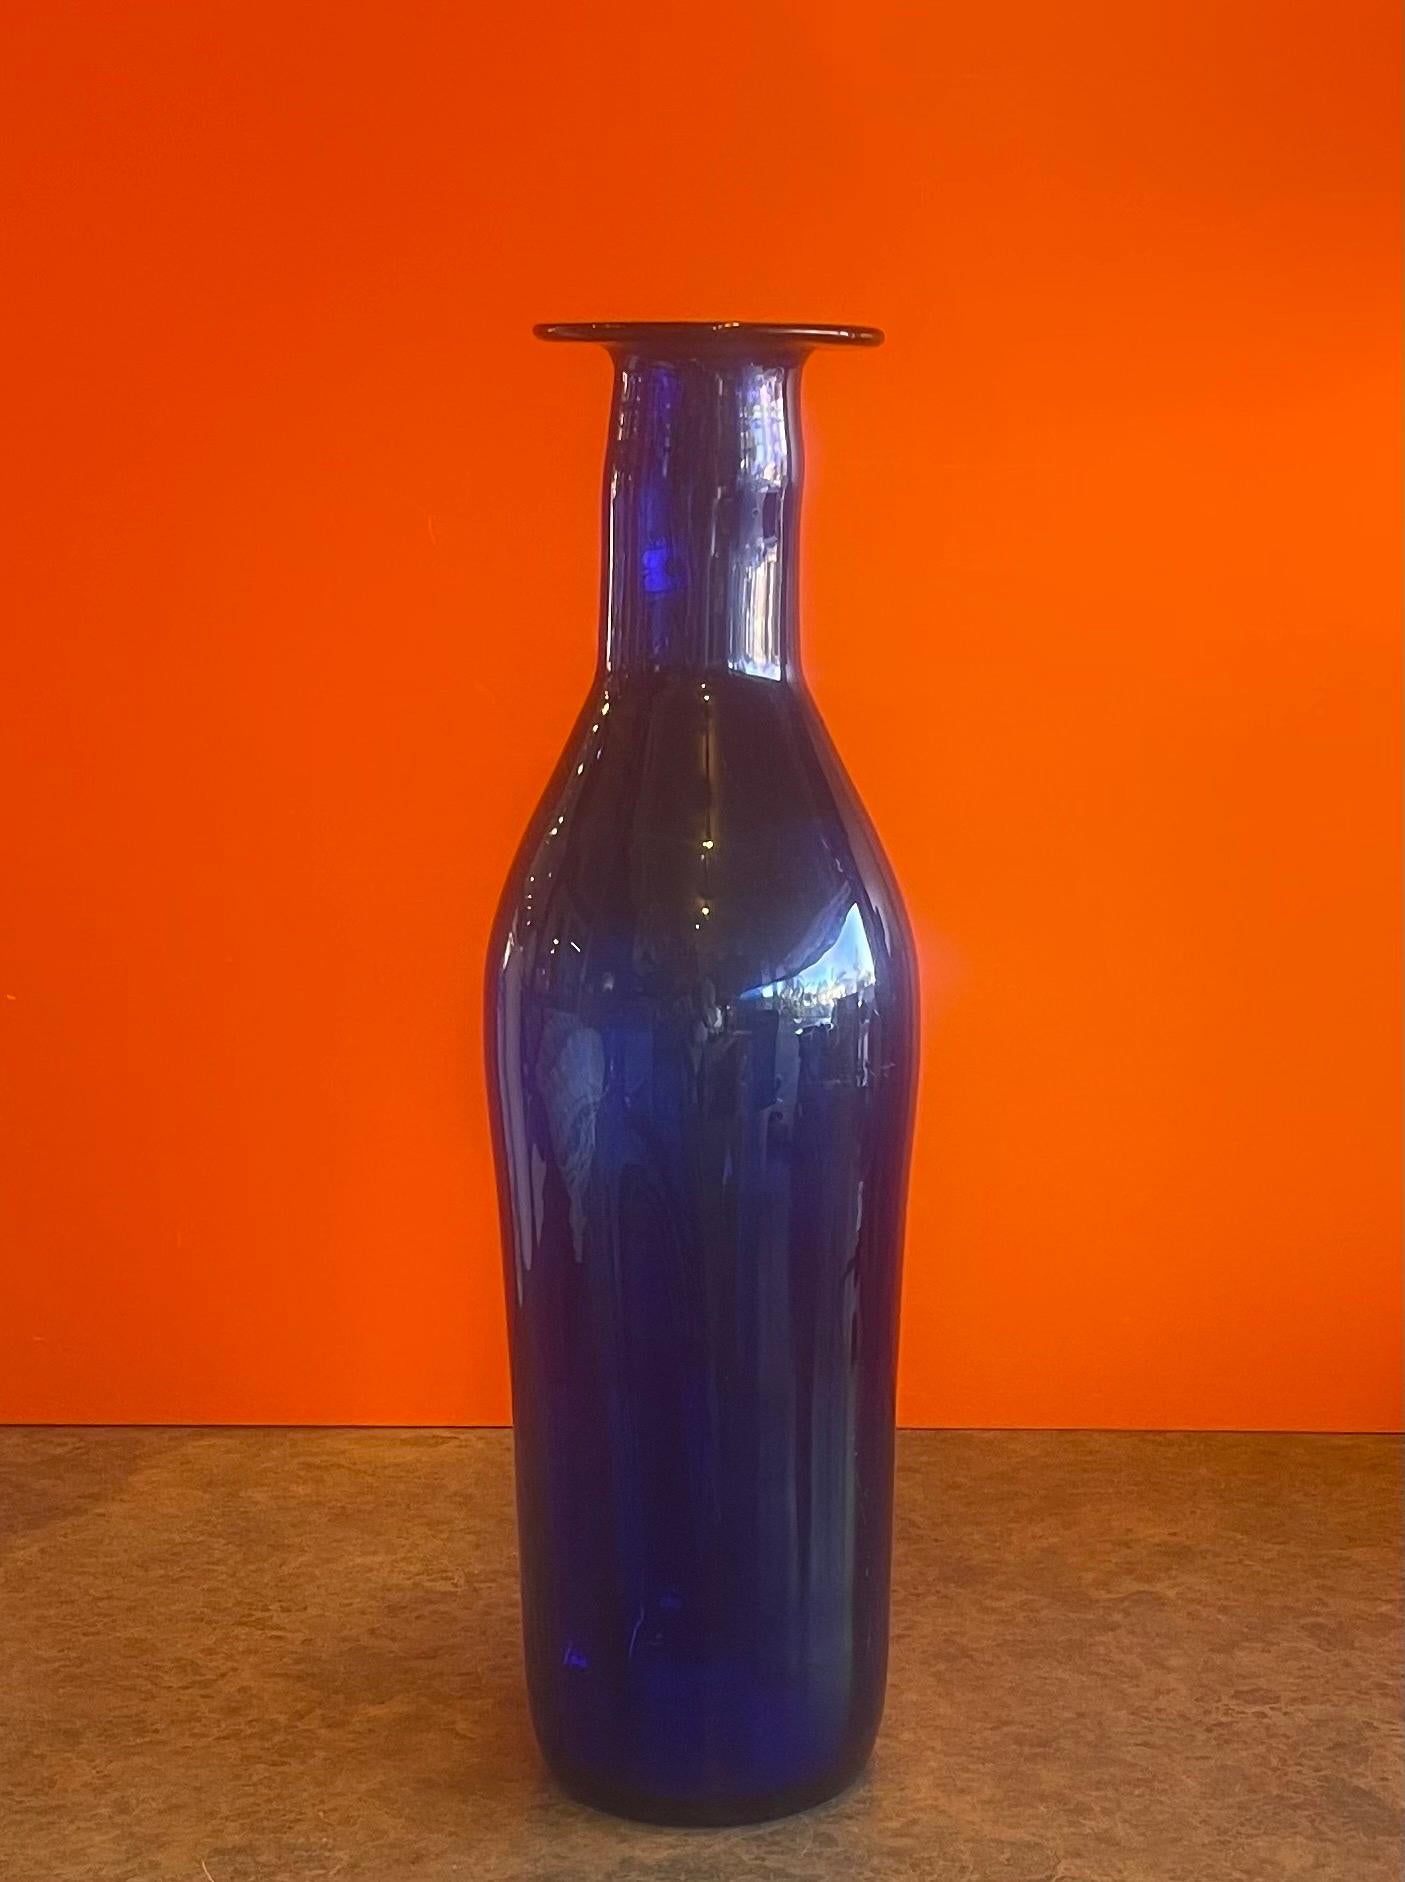 blenko vase shapes